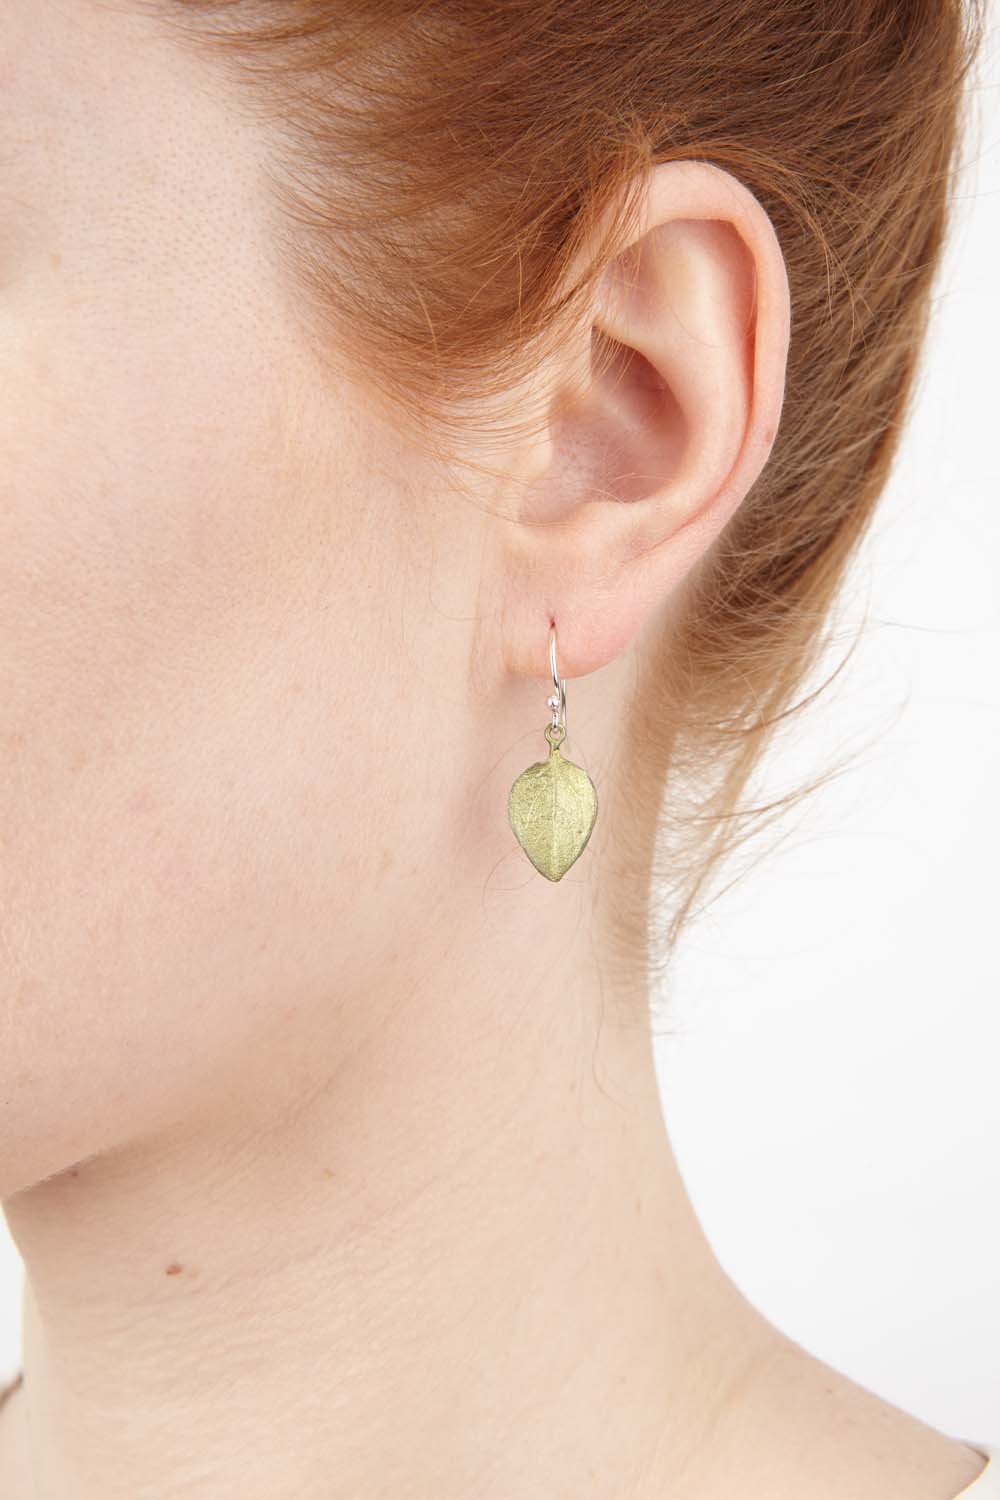 Sweet Basil Earrings - Small Leaf